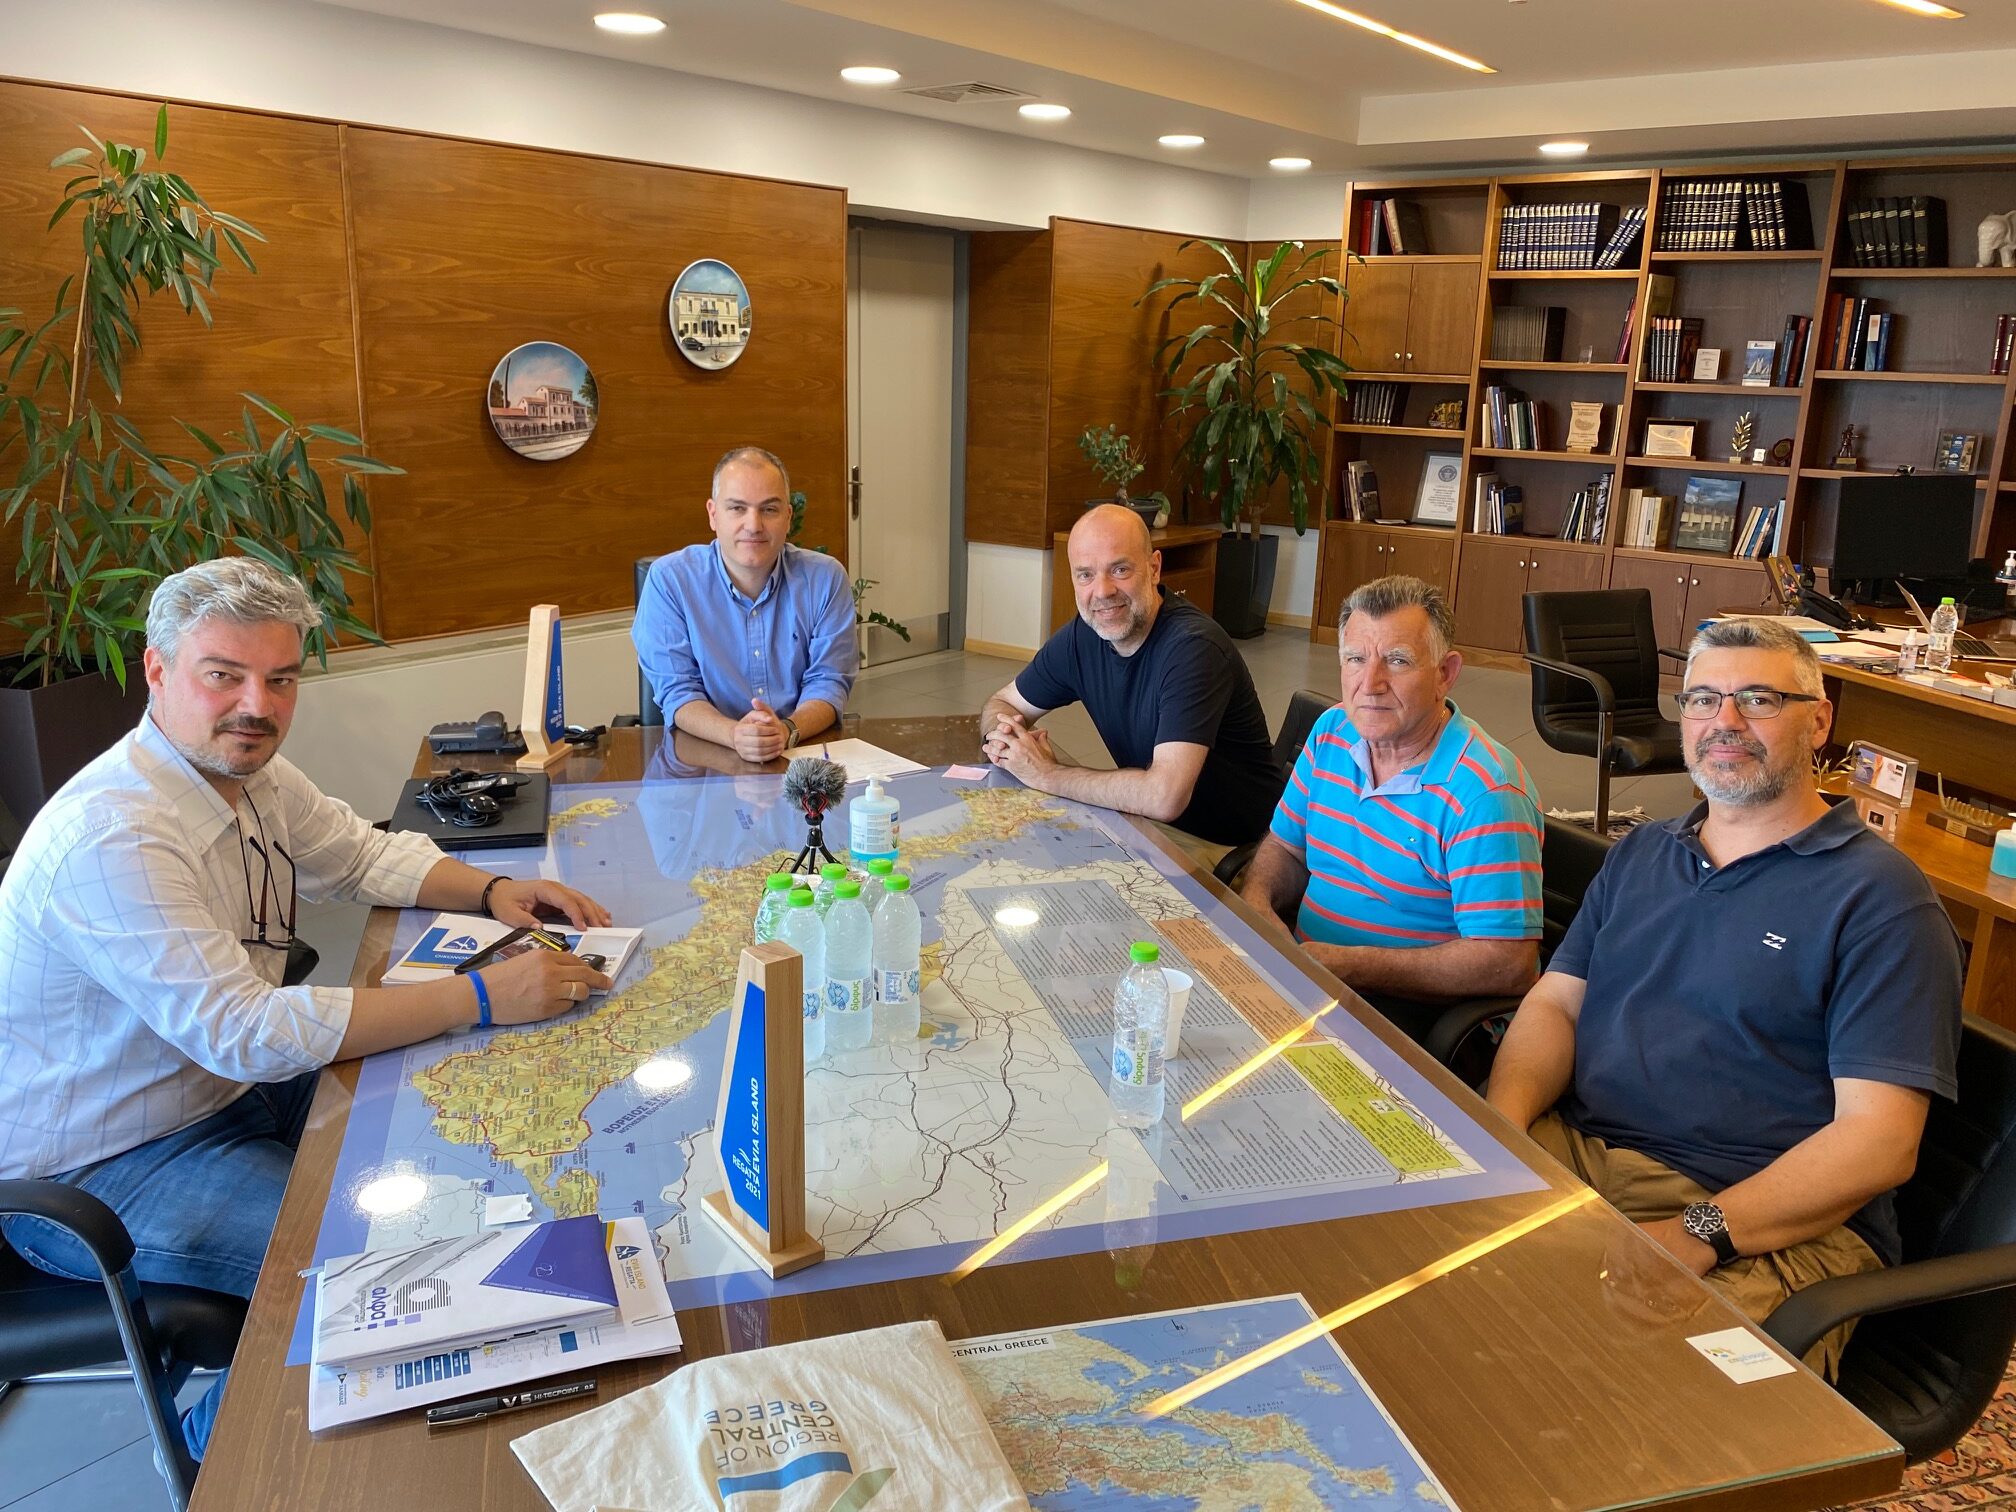 Evia Island Regatta 2022: Συνάντηση με Κελαϊδίτη για την υλοποίηση του ιστιοπλοϊκού αγώνα